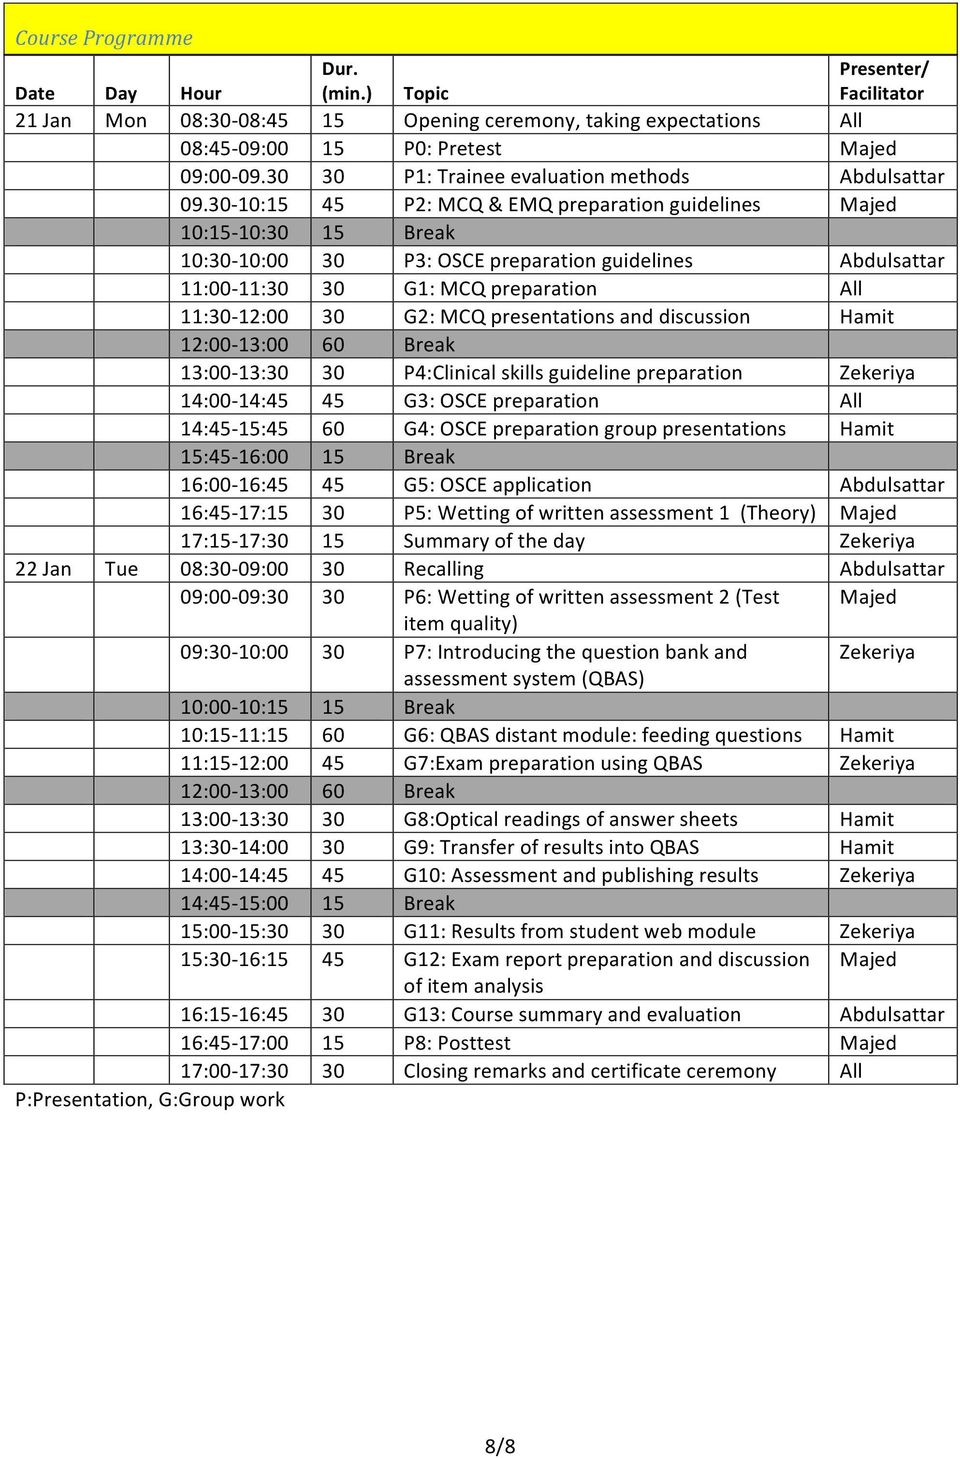 30-10:15 45 P2: MCQ & EMQ preparation guidelines Majed 10:15-10:30 15 Break 10:30-10:00 30 P3: OSCE preparation guidelines Abdulsattar 11:00-11:30 30 G1: MCQ preparation All 11:30-12:00 30 G2: MCQ